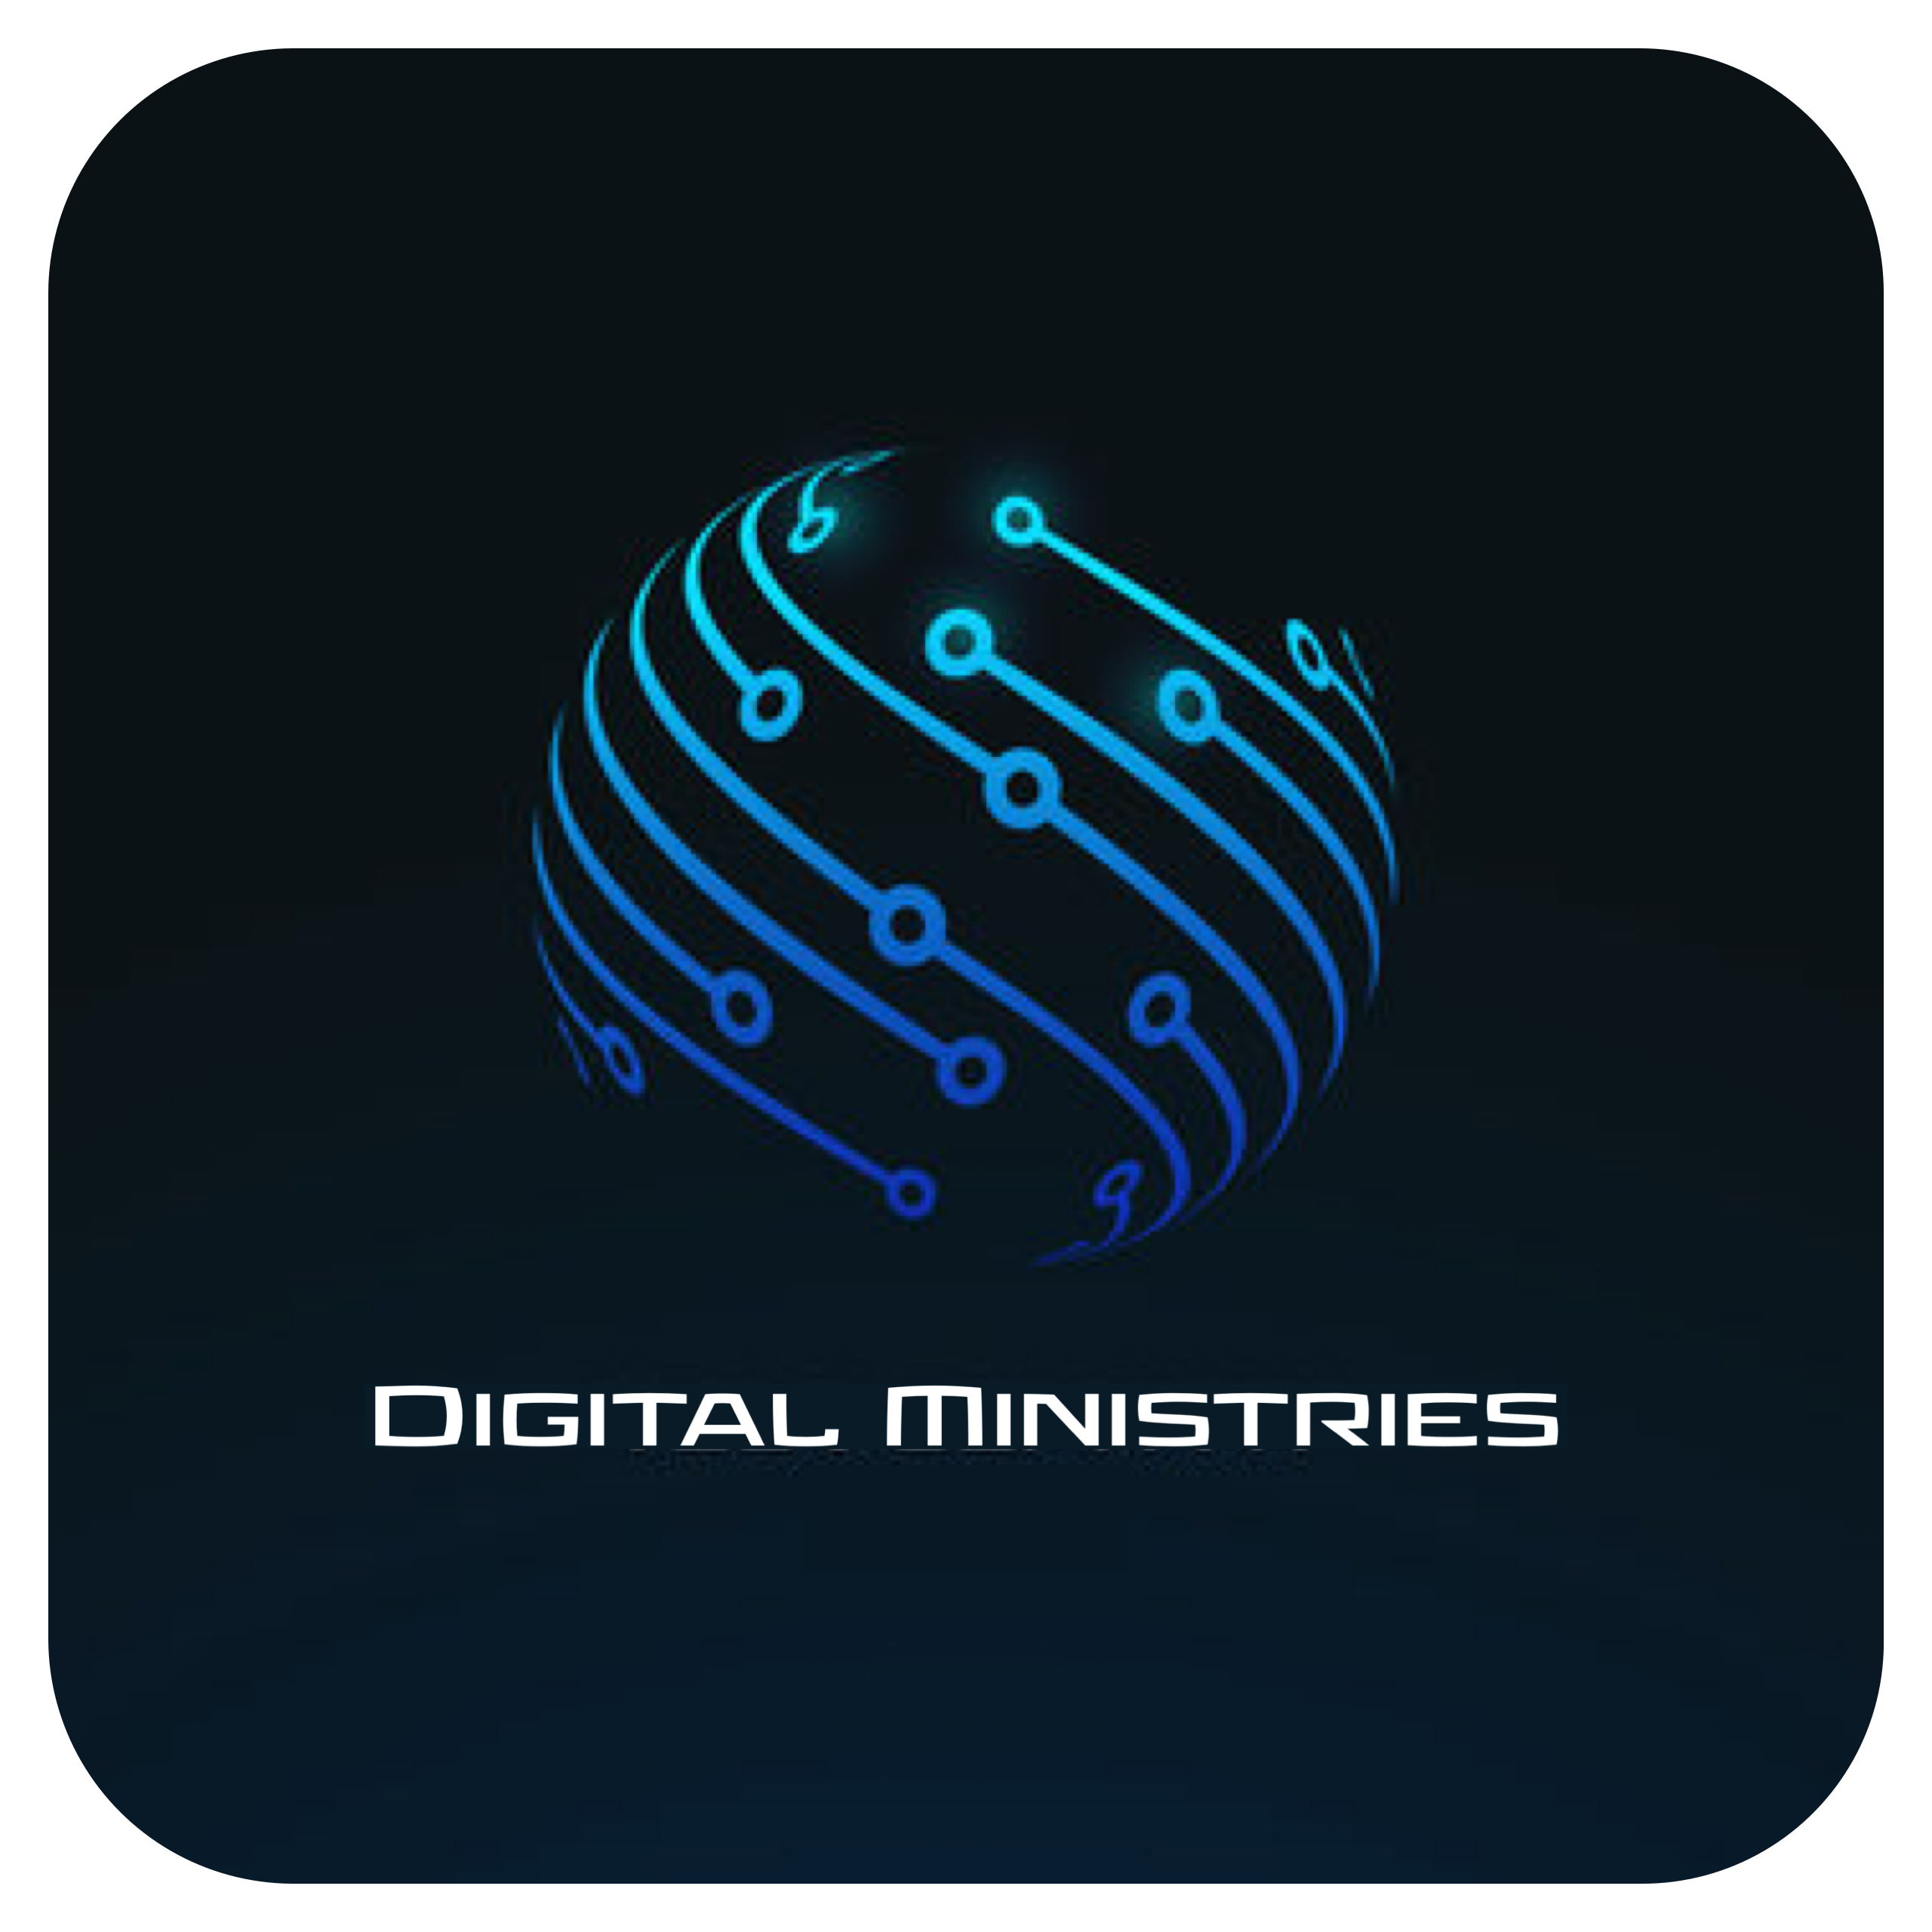 Digital Ministries